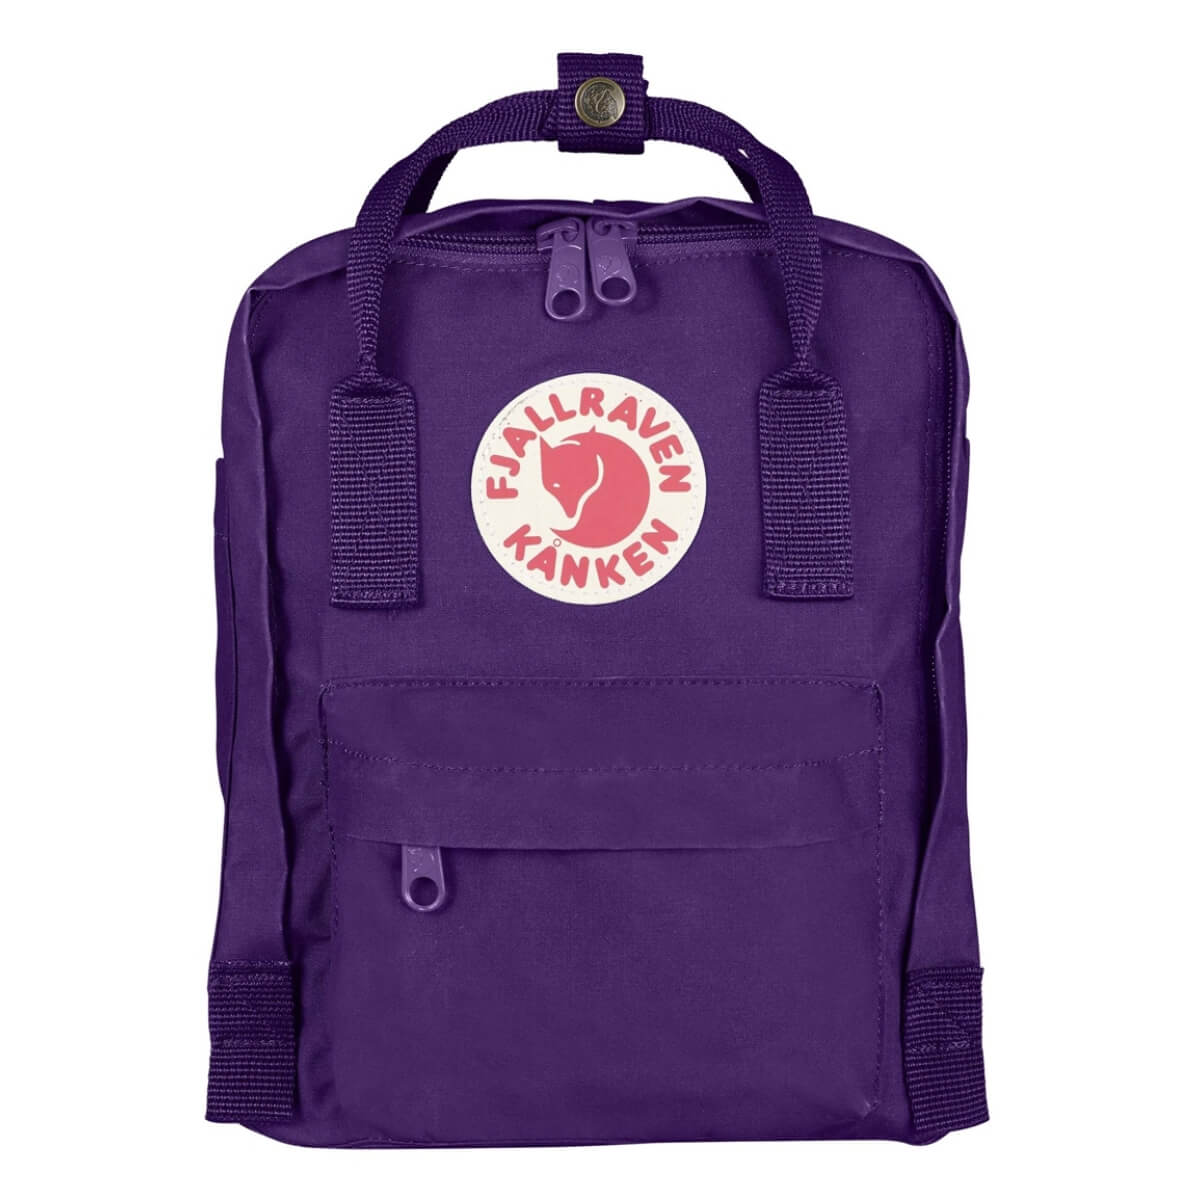 Міський рюкзак Fjallraven Kanken Mini Purple 7 л 23561.580